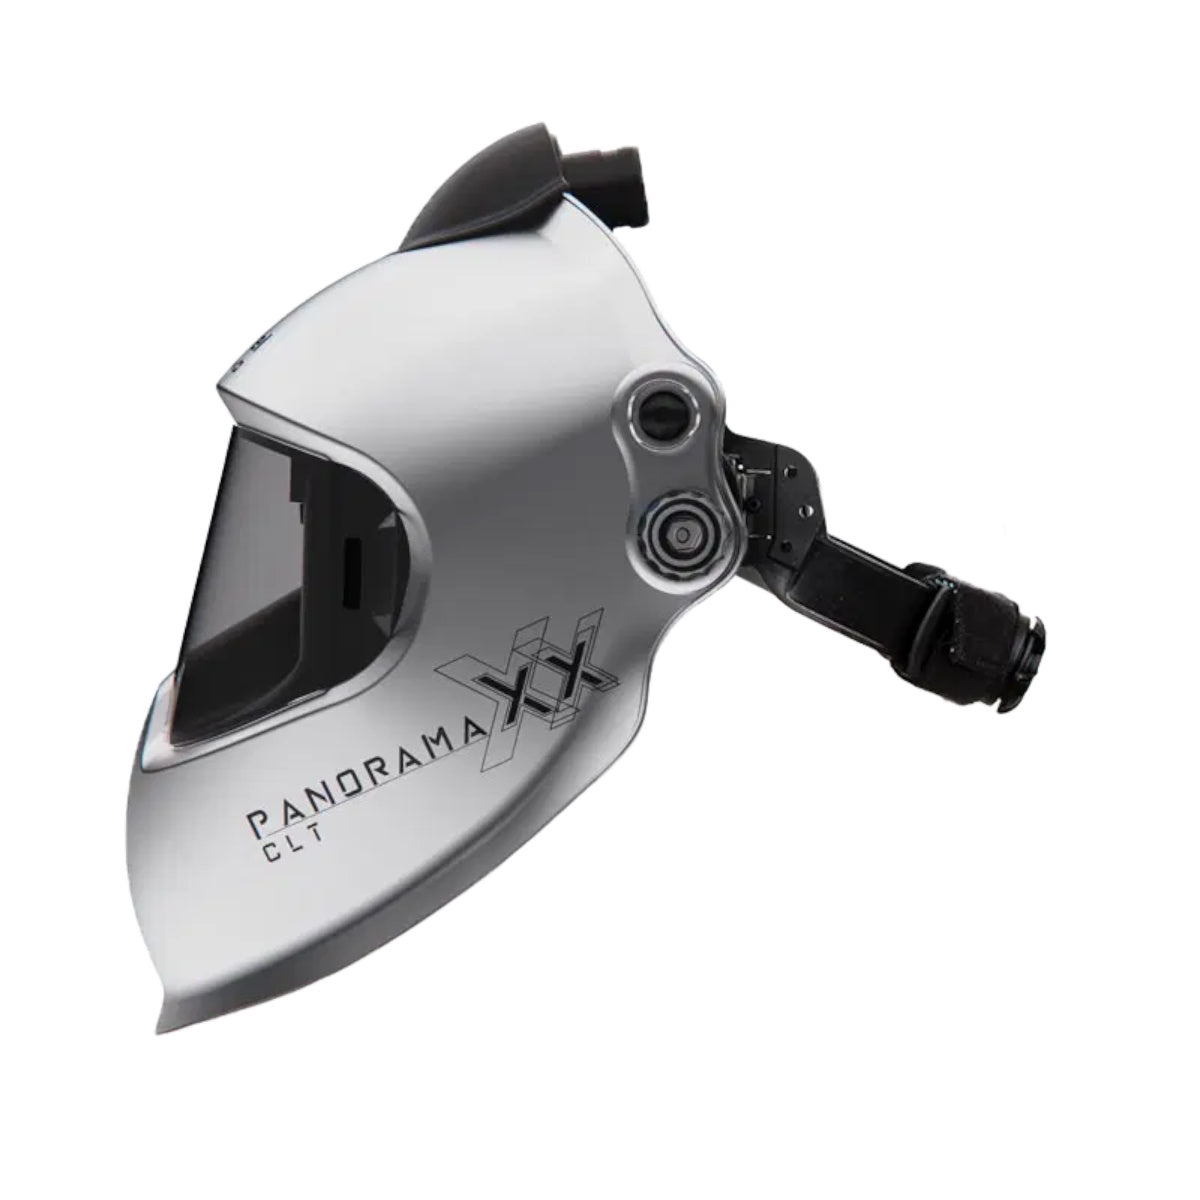 Optrel Silver Panoramaxx CLT Welding Helmet for E3000 PAPR (4441.781-US)